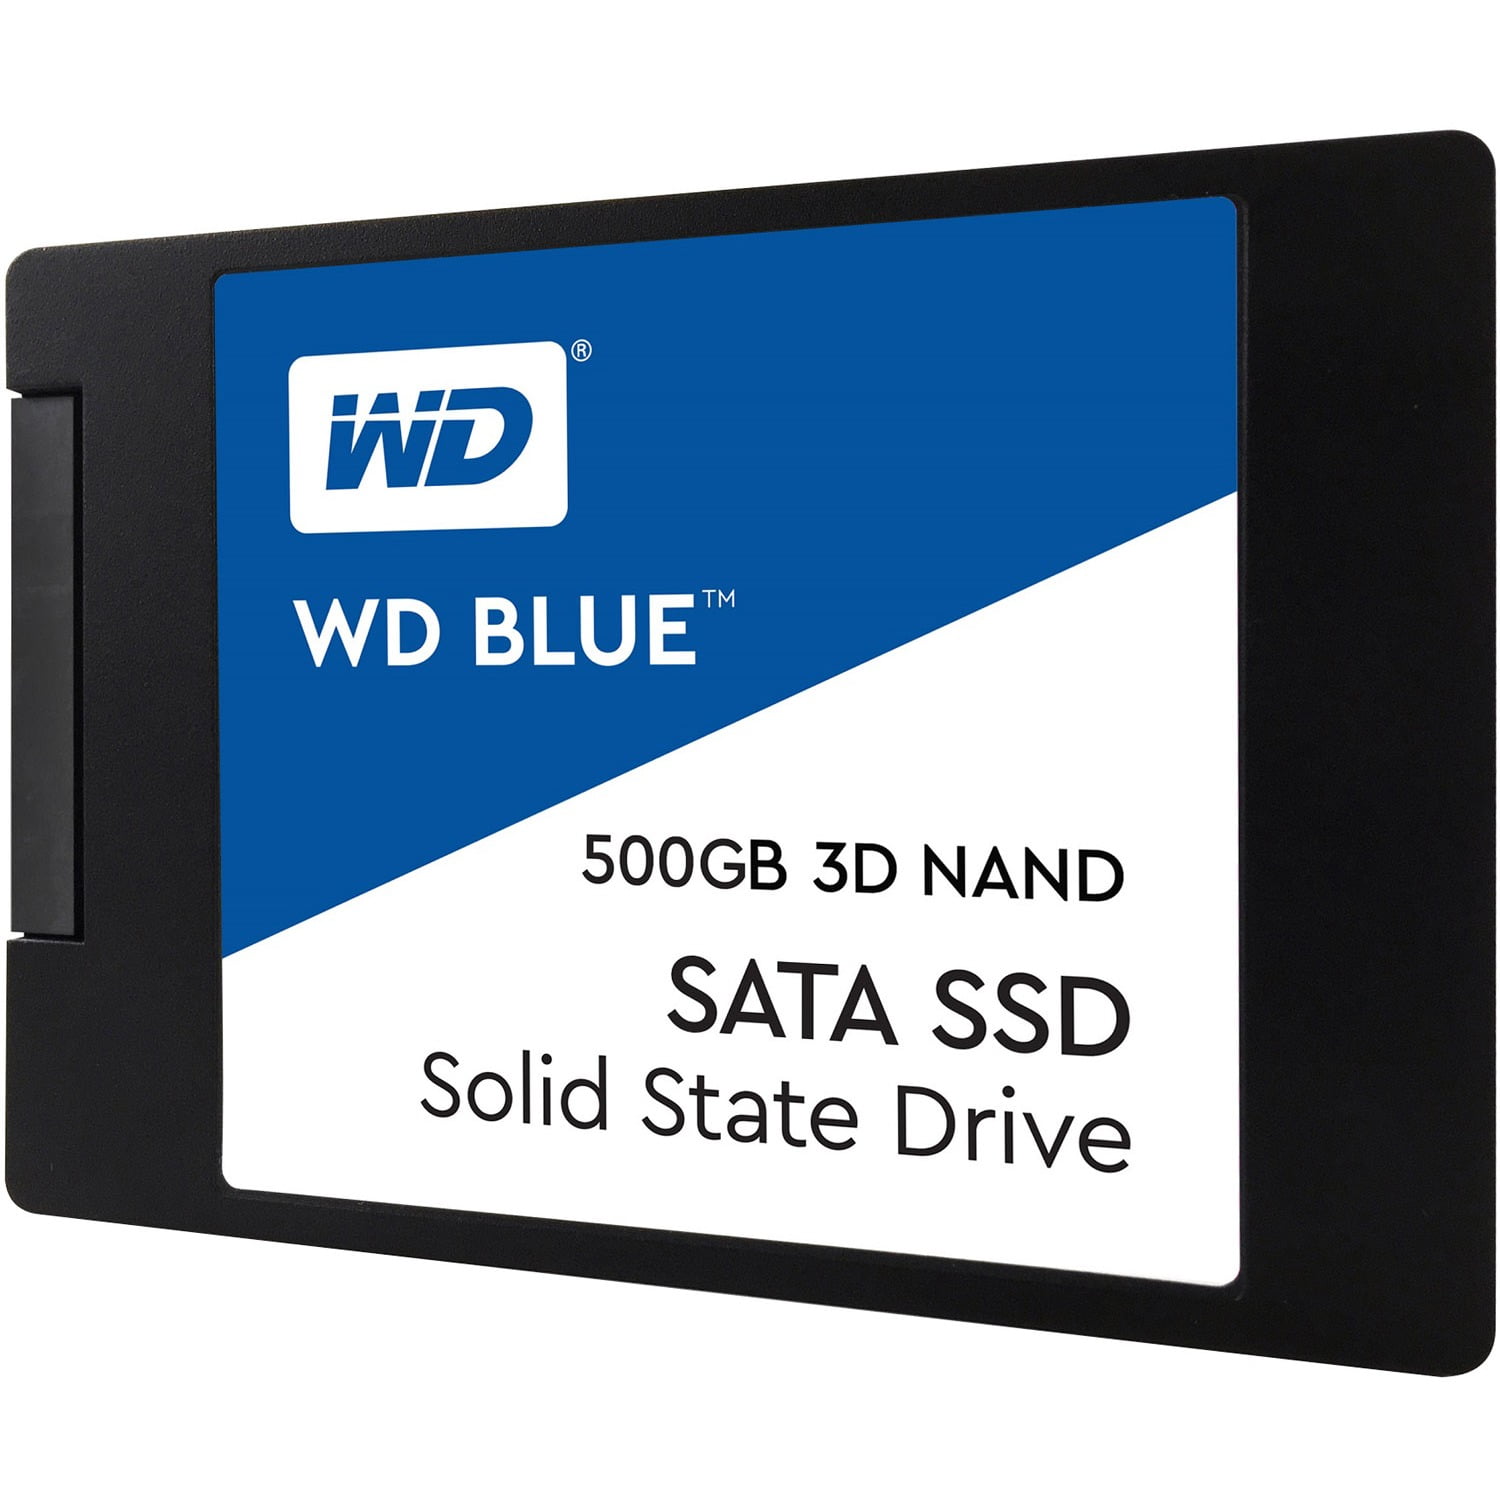 ◎【99】SSD WD BLUE 3D NAND 500GB SATA-